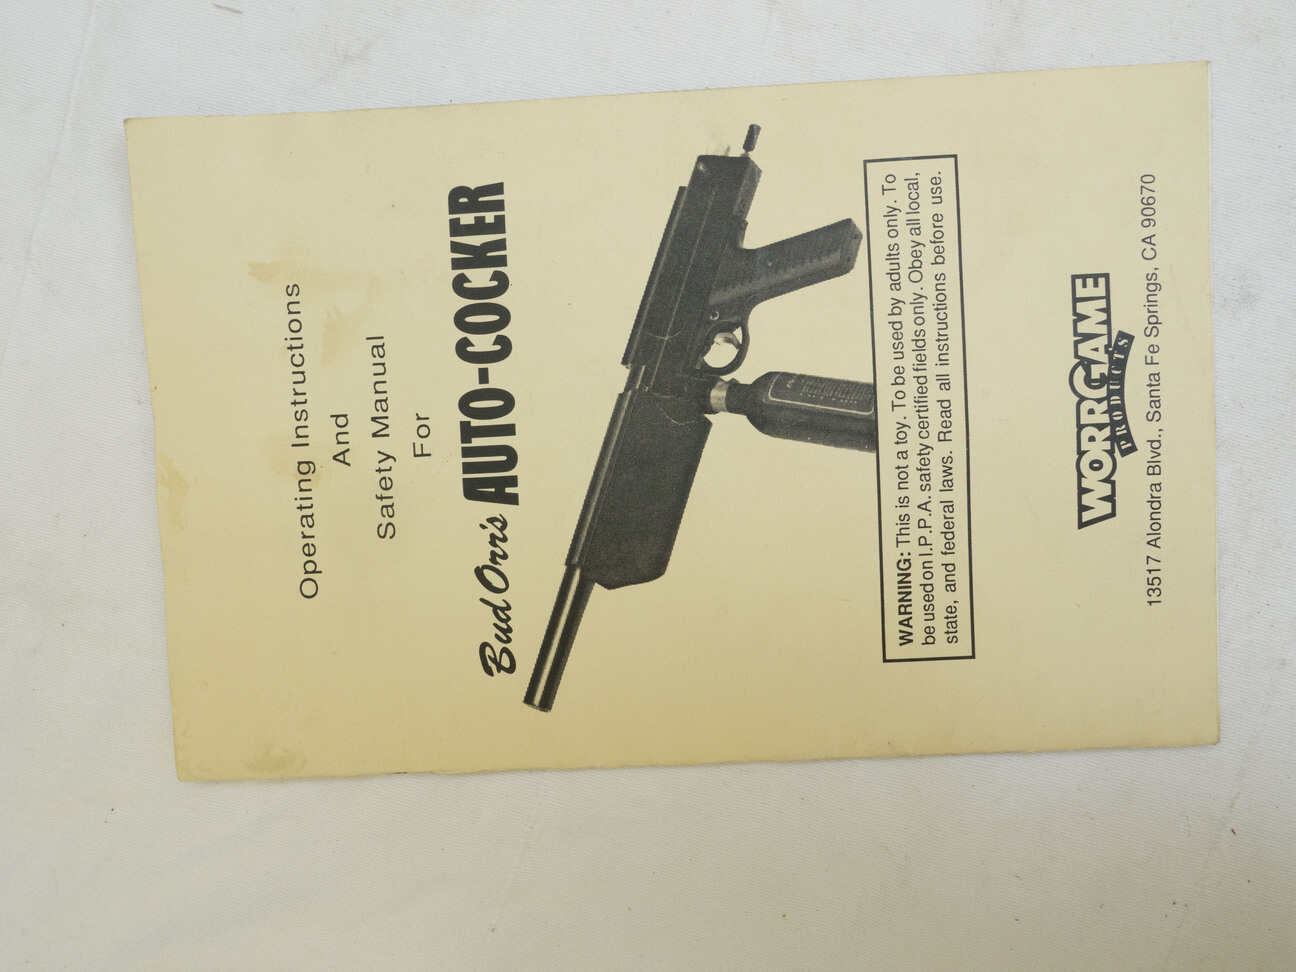 Vintage WGP Autococker manual. Used, good shape